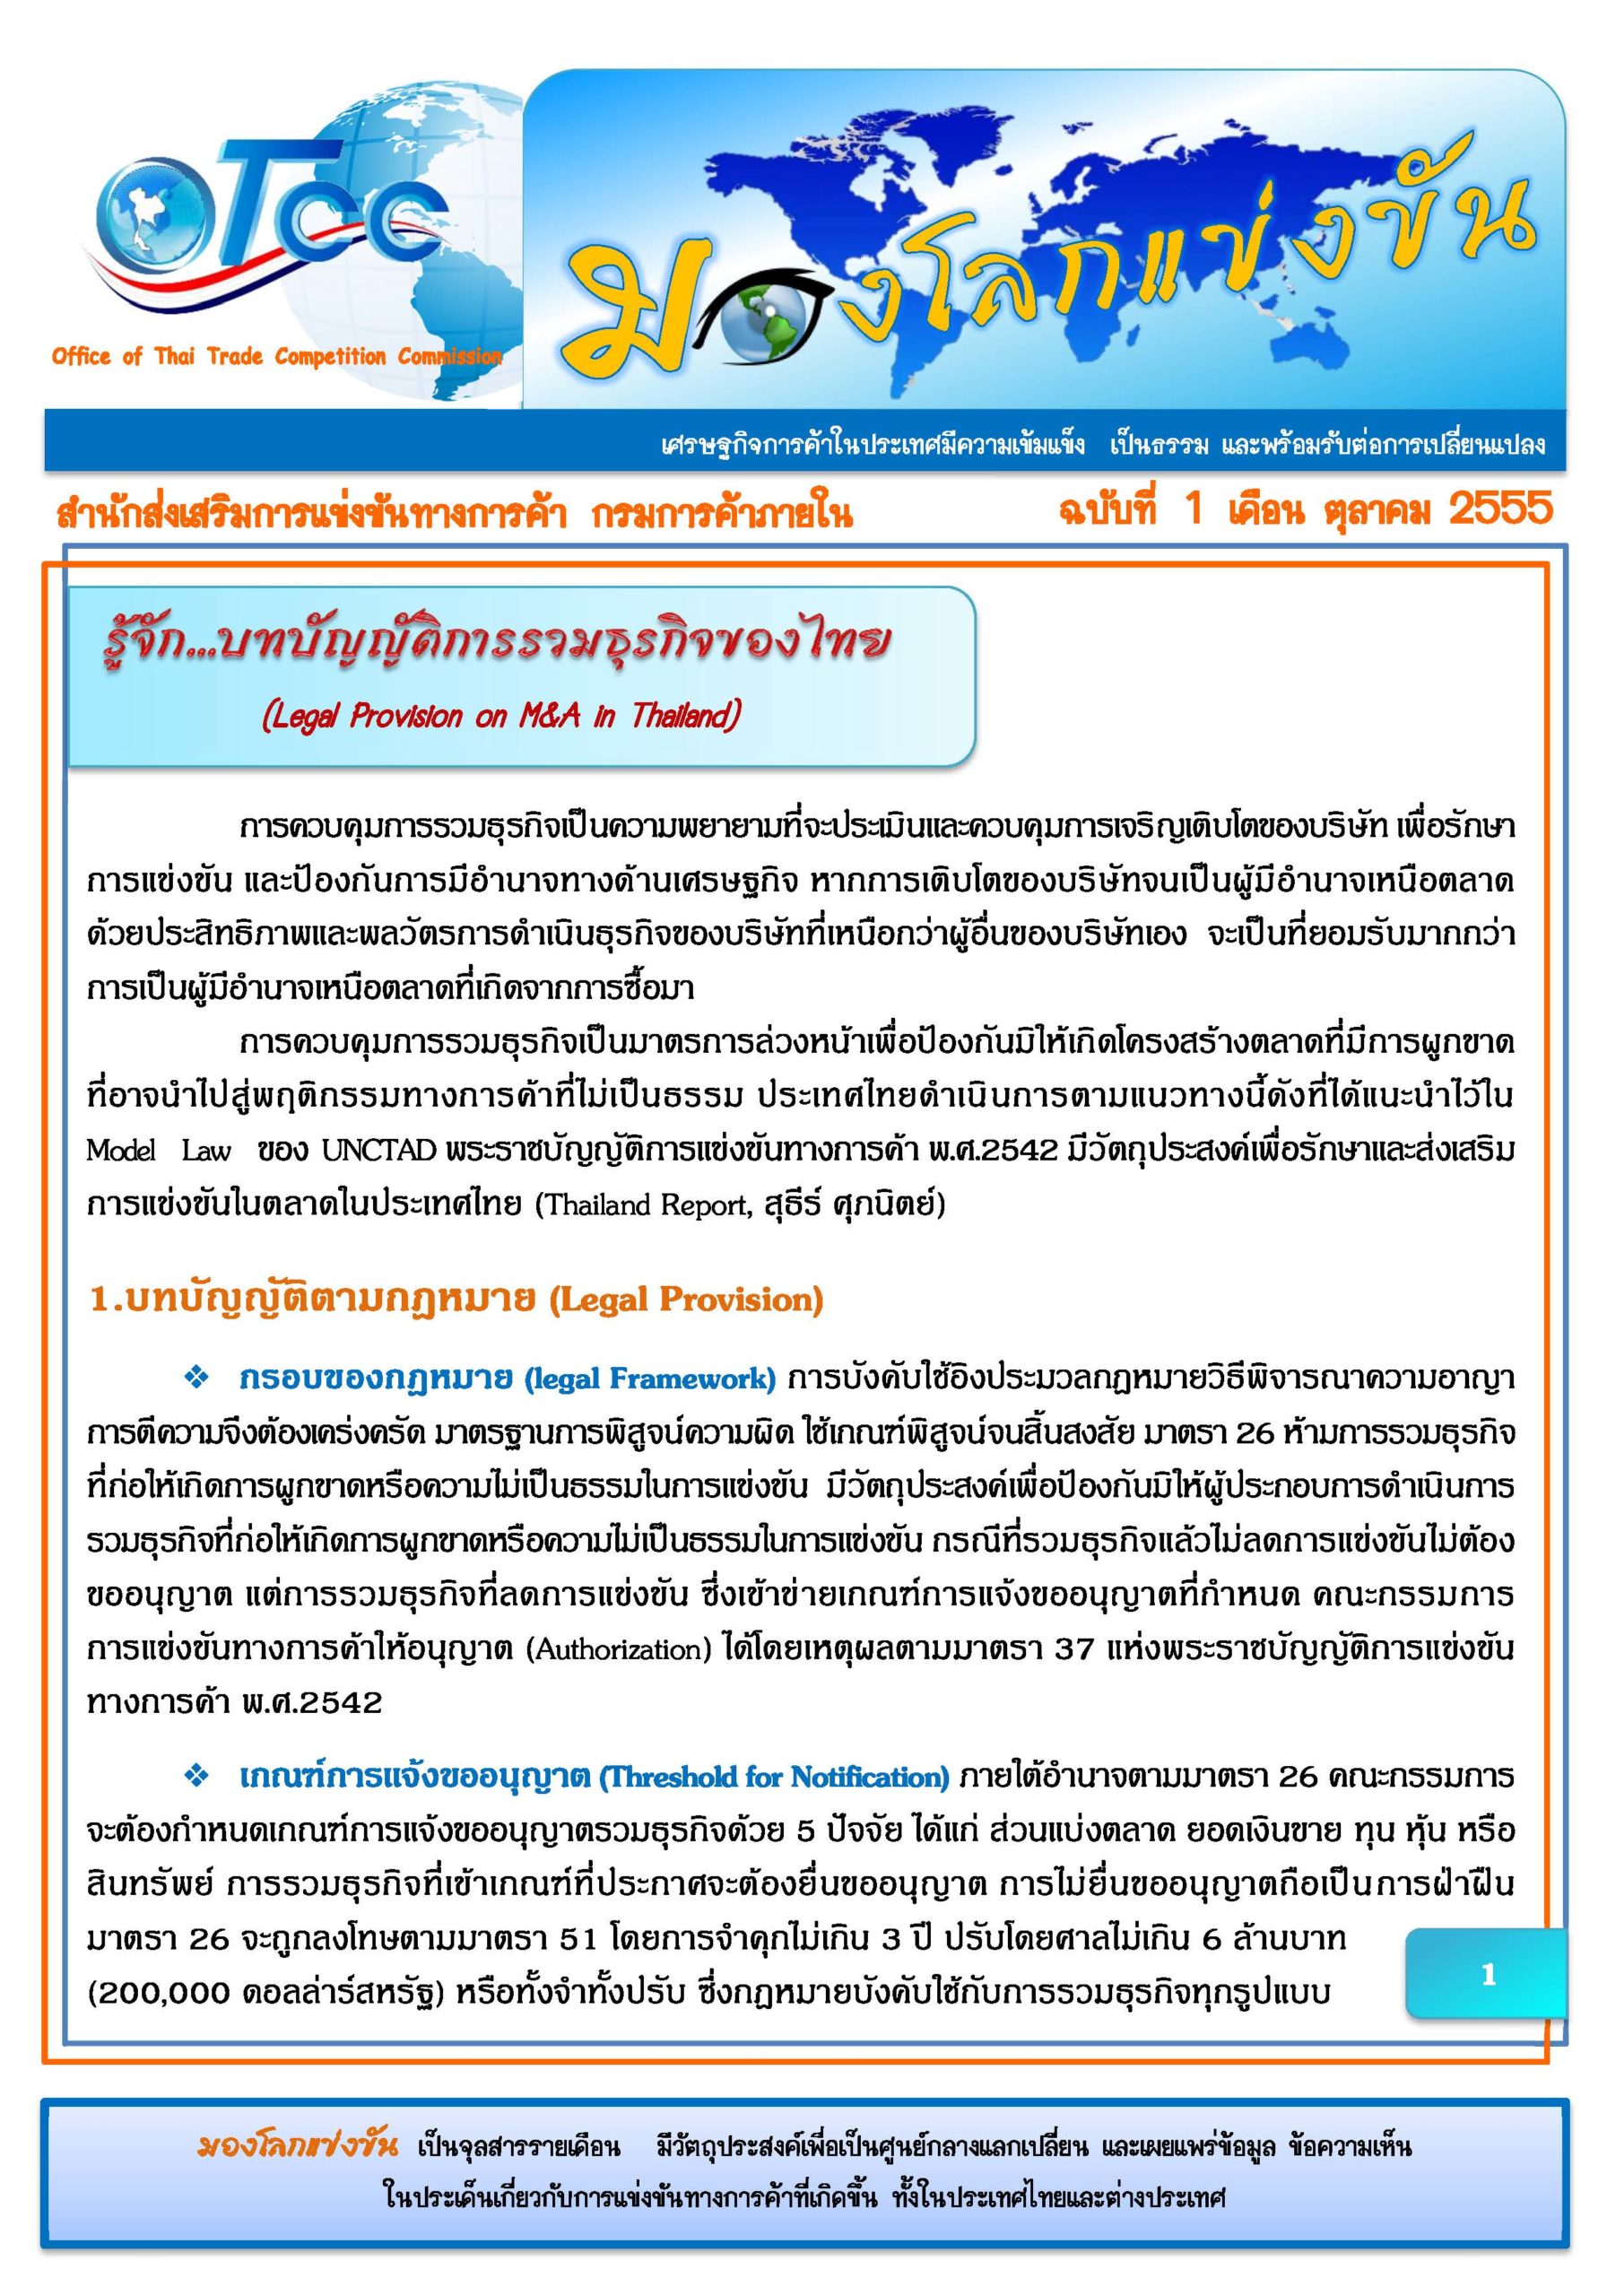 ฉบับที่ 1 : รู้จัก…บทบัญญัติการรวมธรุกิจของไทย (Legal Provision on M&A In Thailand)